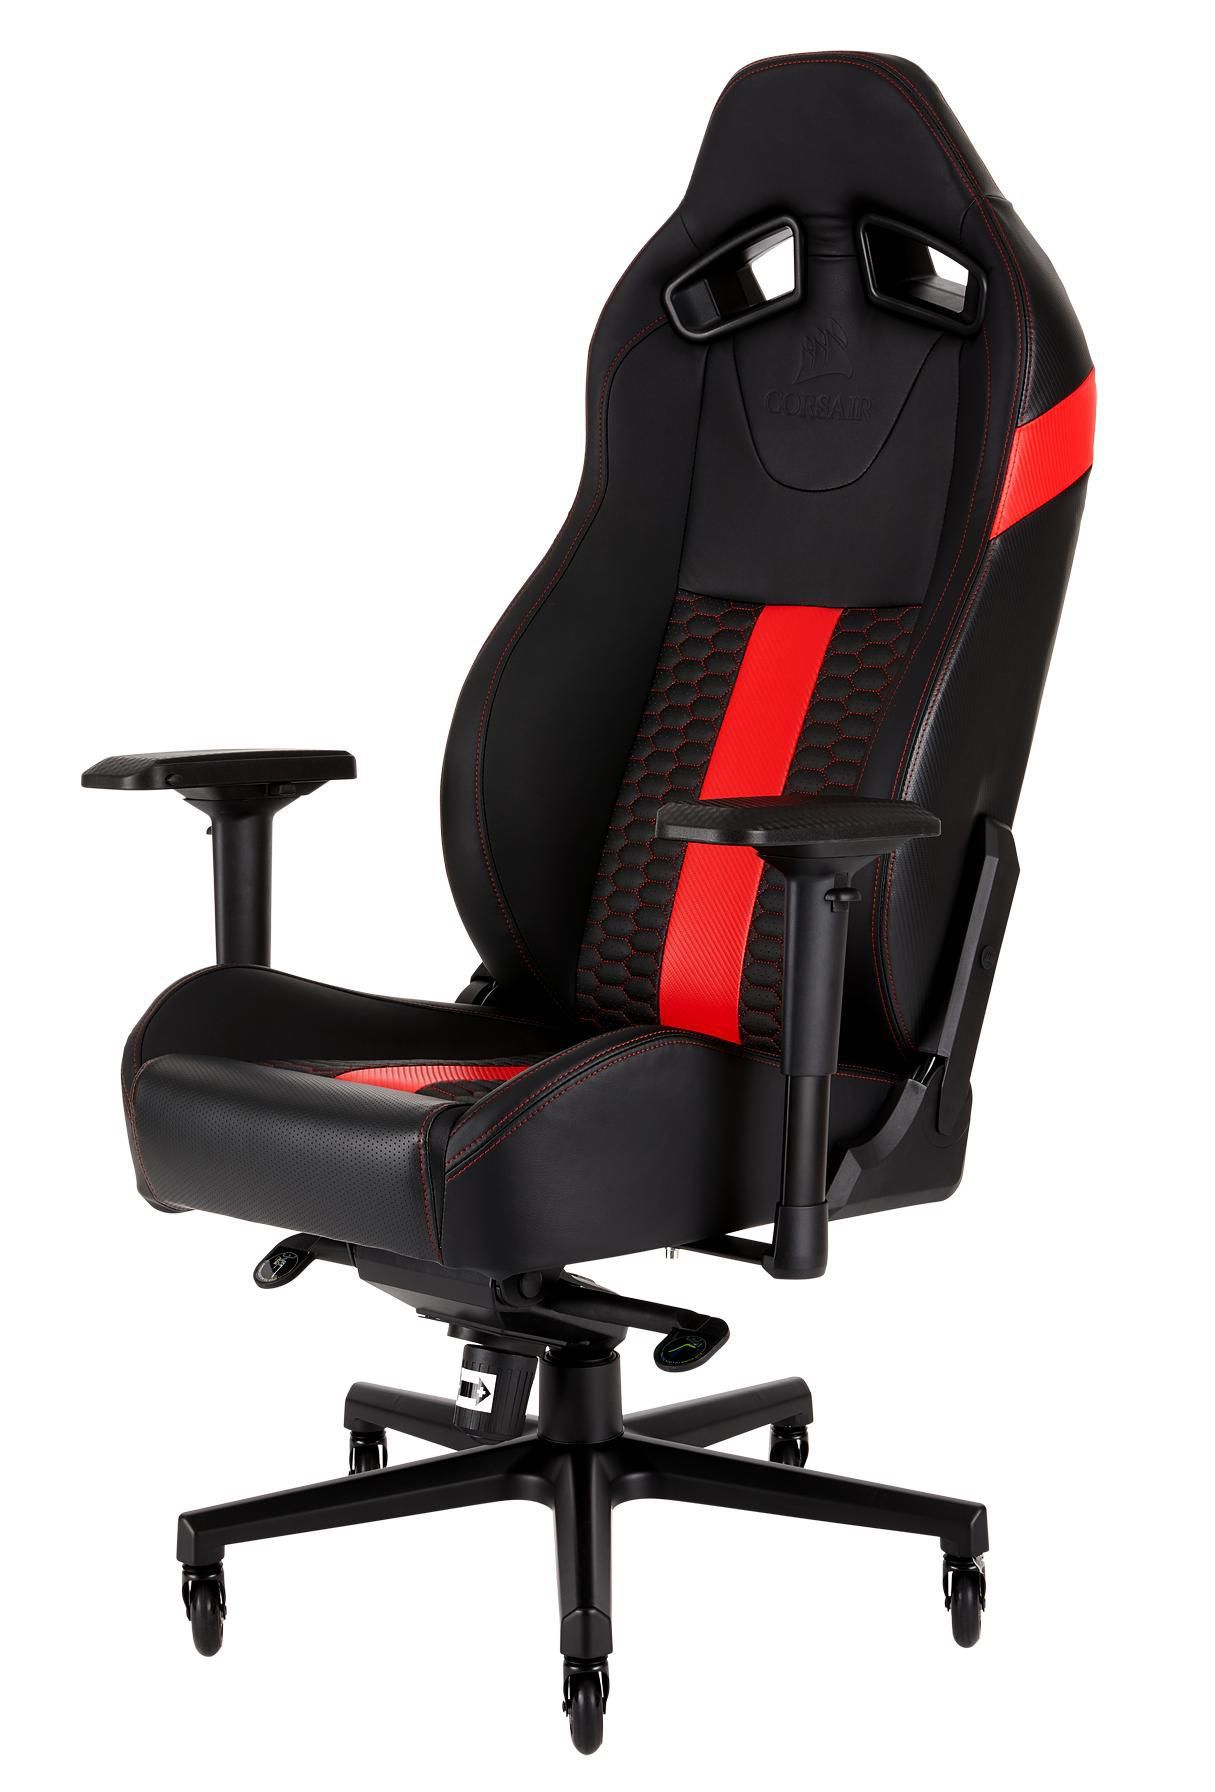 Corsair CF-9010008-WW T2  blackRed Gaming Chair 